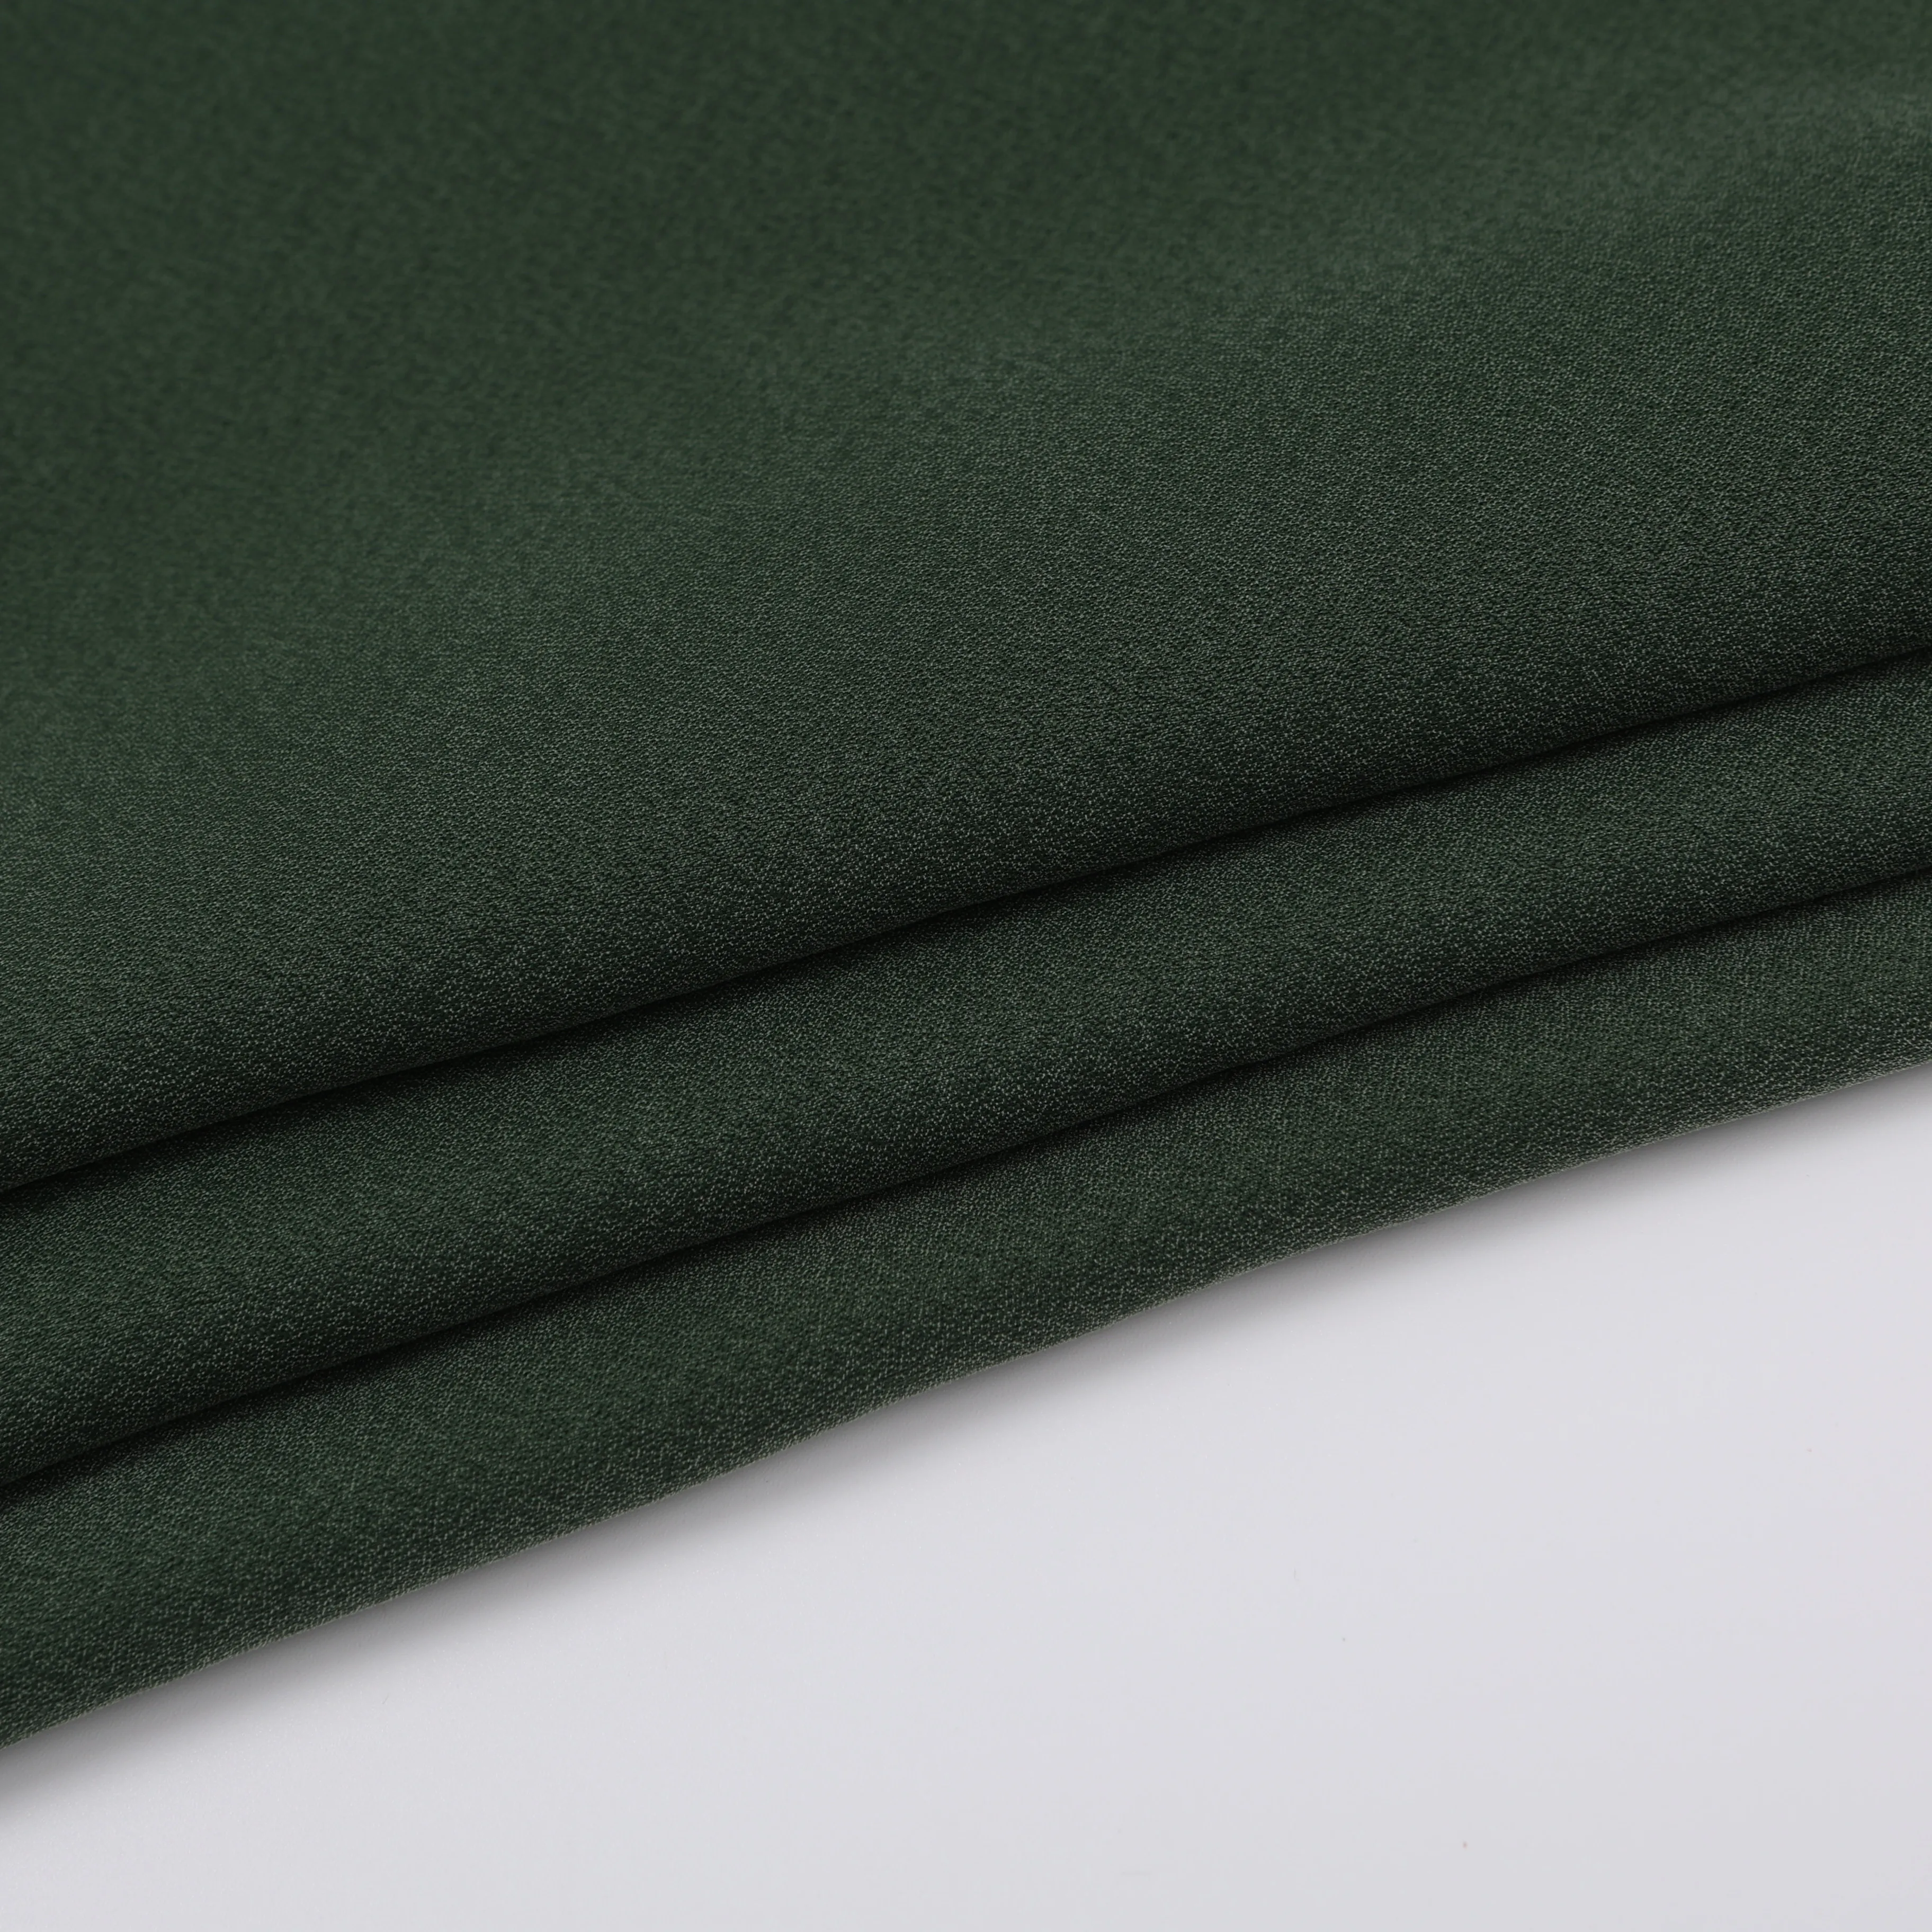 Ткань Cupro, бесплатный образец, тканая шелковая ткань 70 г/м2, dobby cupro, вискозная ткань для платья